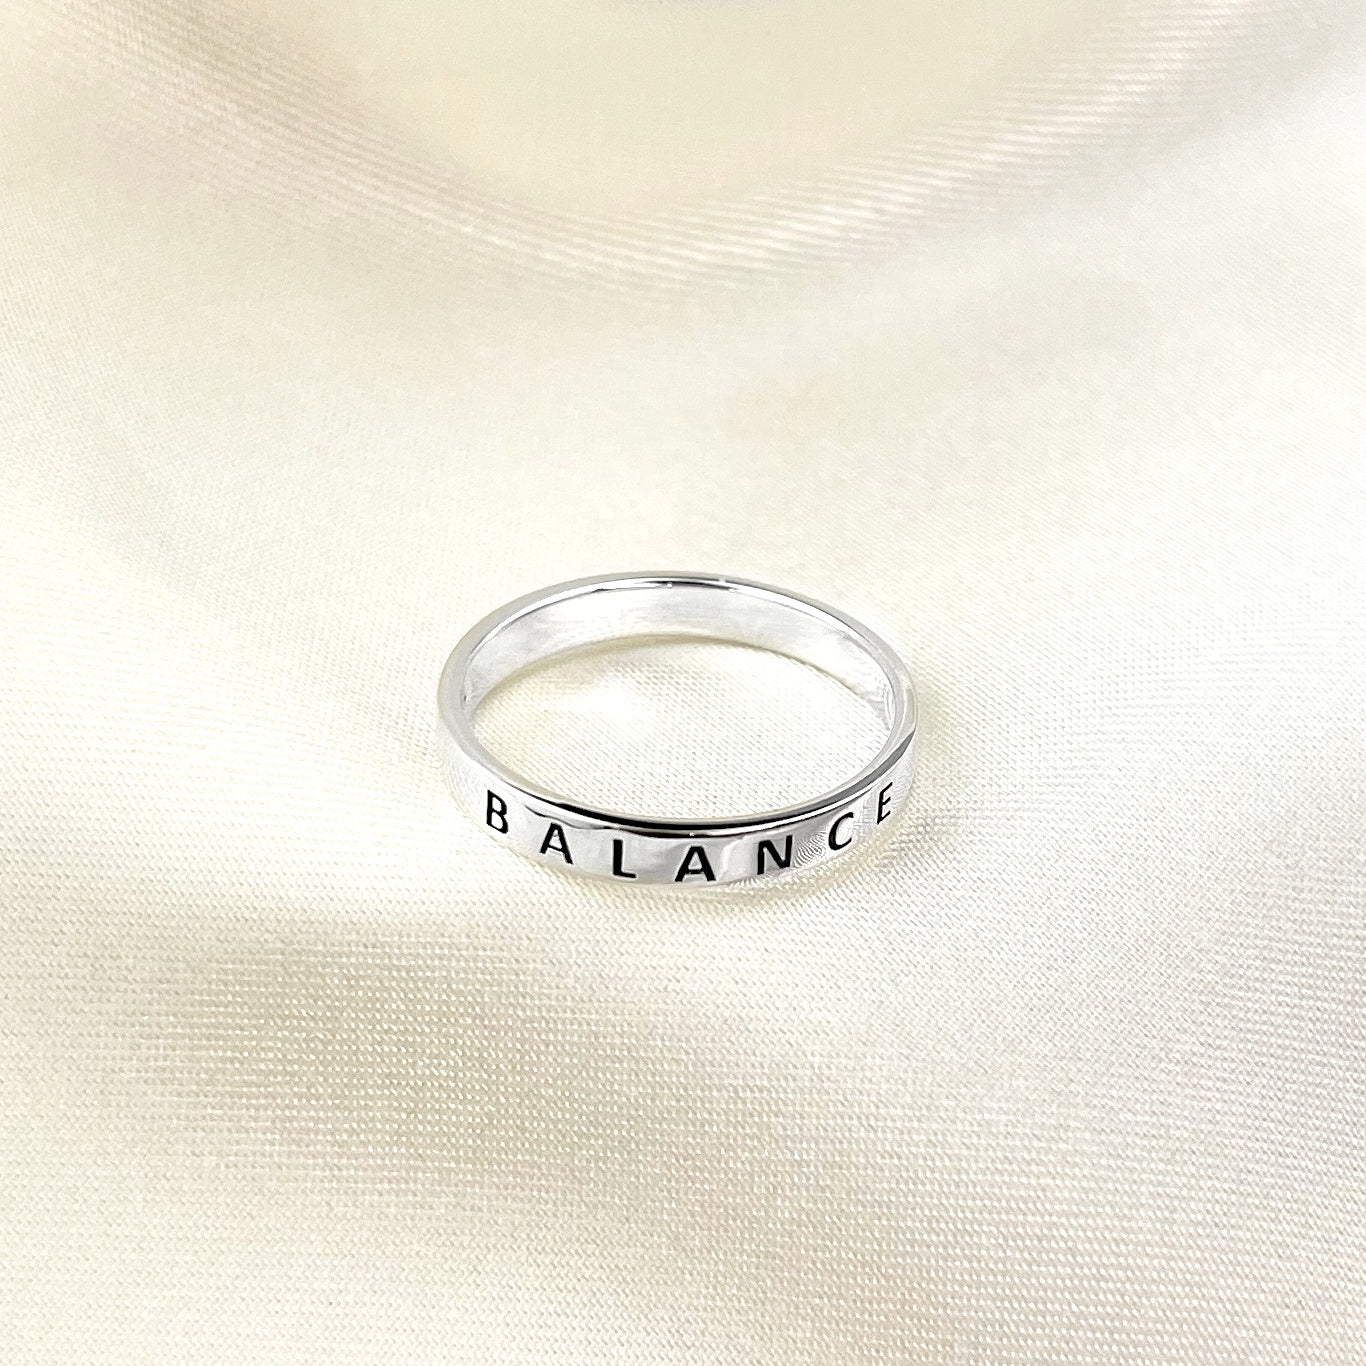 BALANCE Ring - 925 Sterling Silber Gravur Stempel Fingerring RG925-47